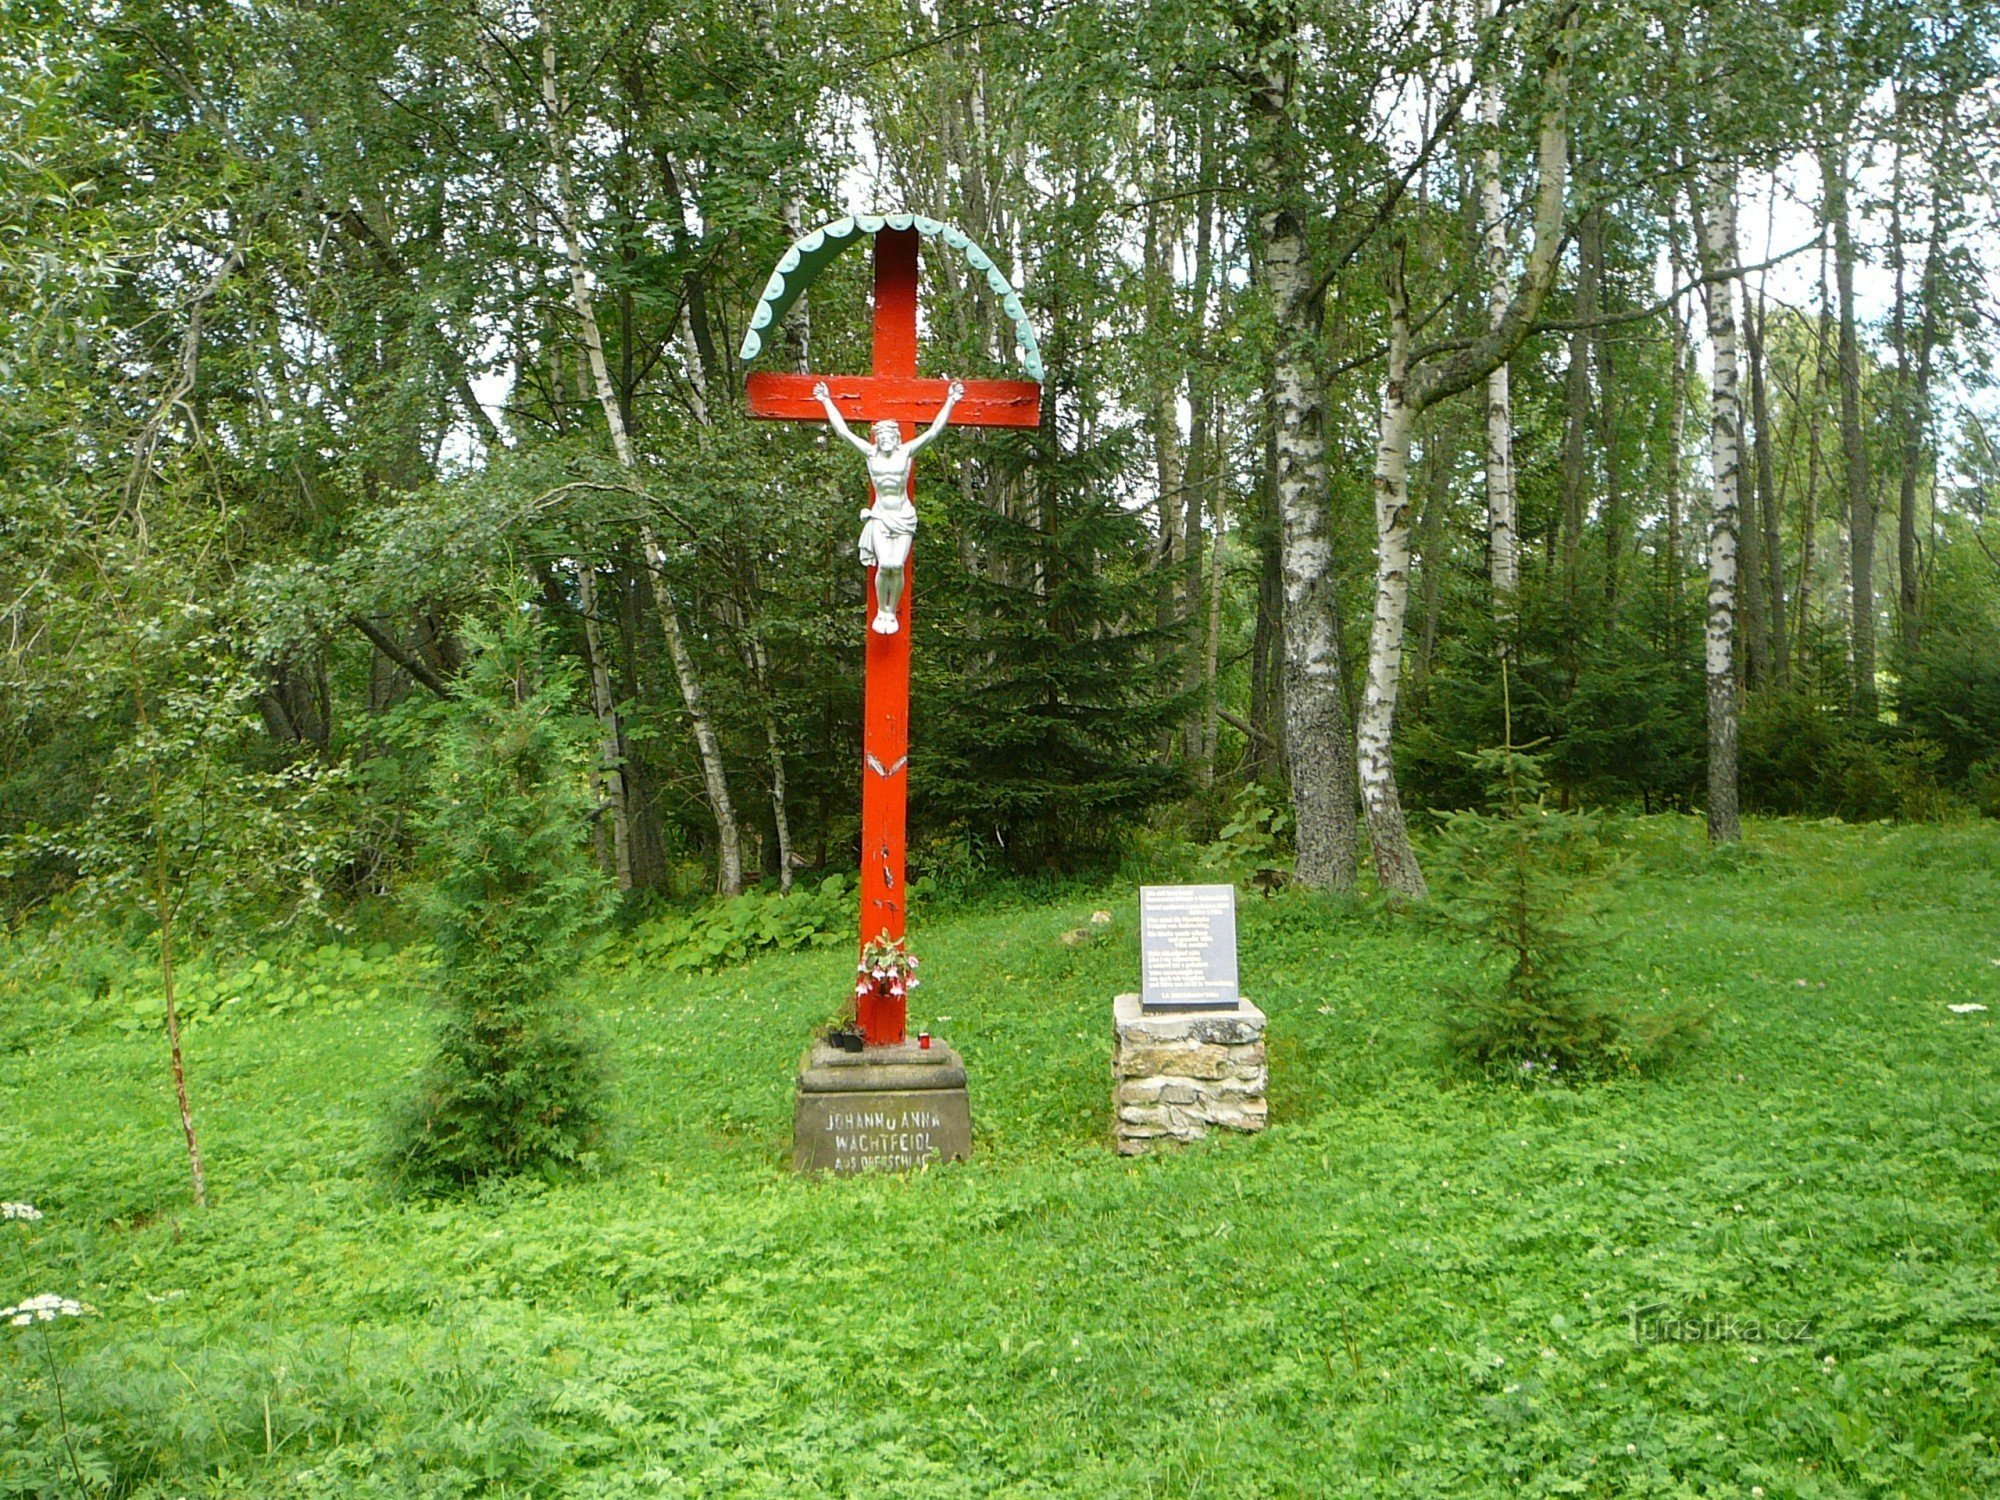 Monumento al pueblo desaparecido de Cudrovice